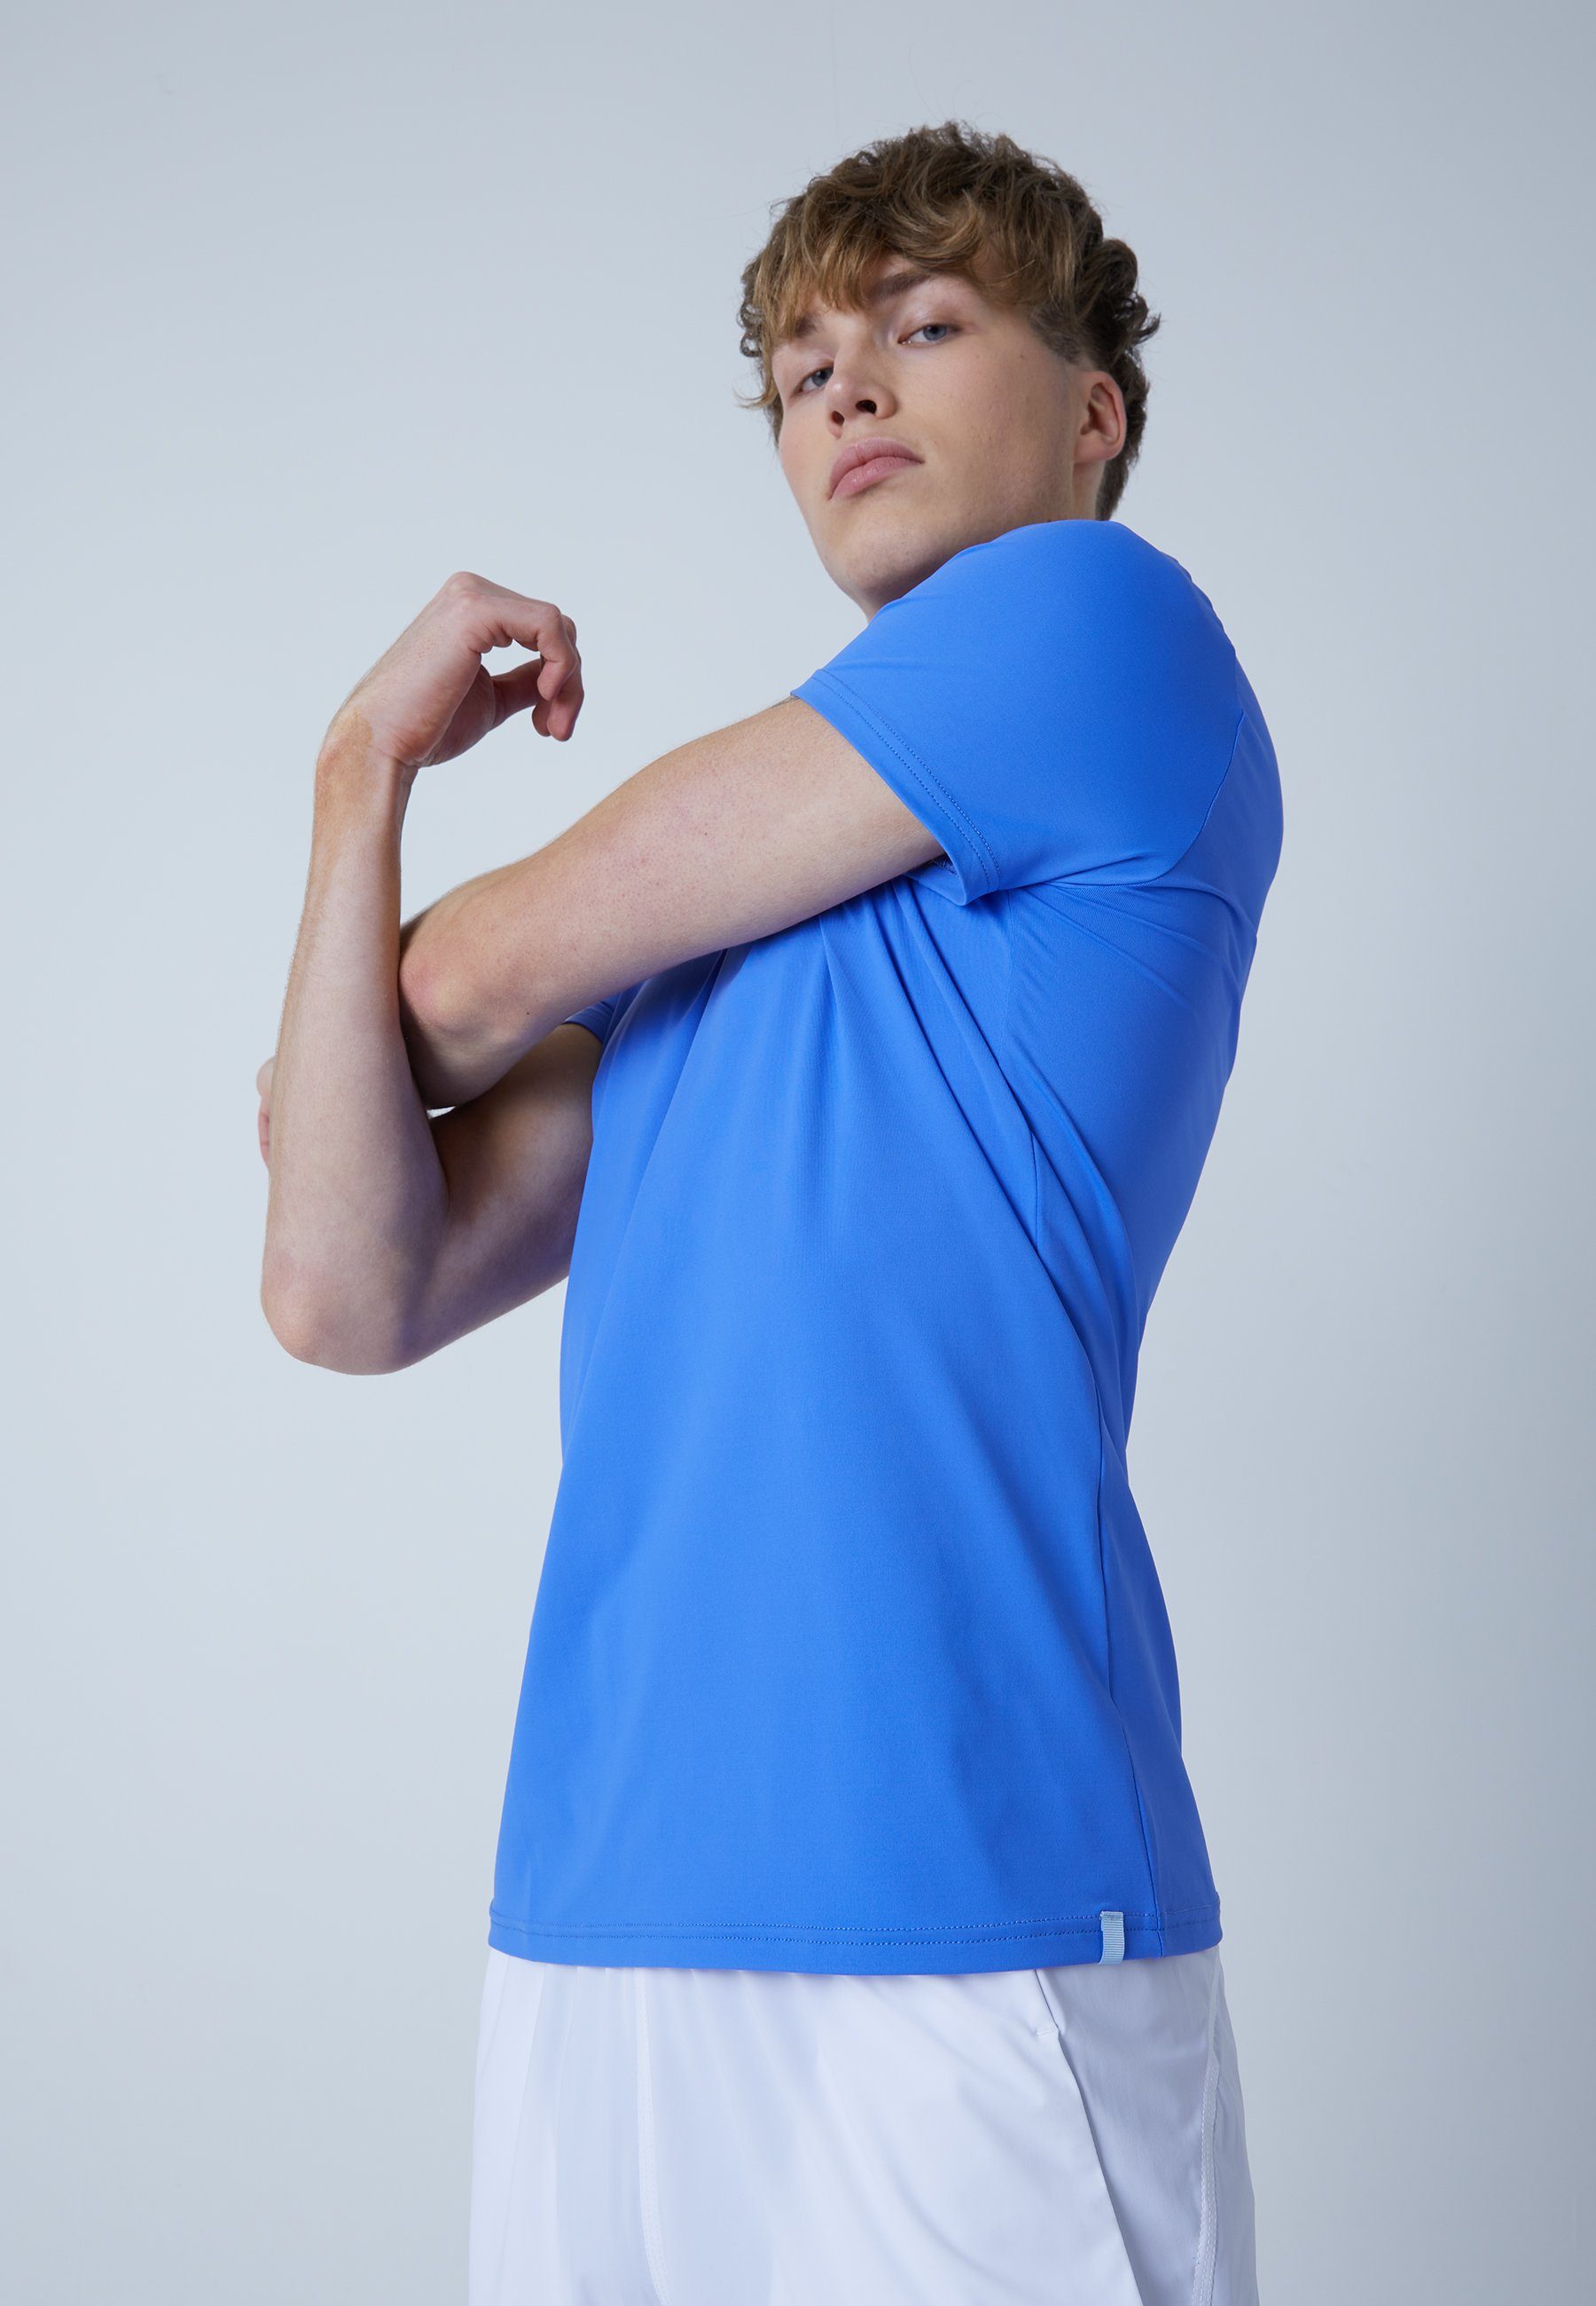 Jungen & SPORTKIND T-Shirt blau Herren kornblumen Rundhals Funktionsshirt Tennis